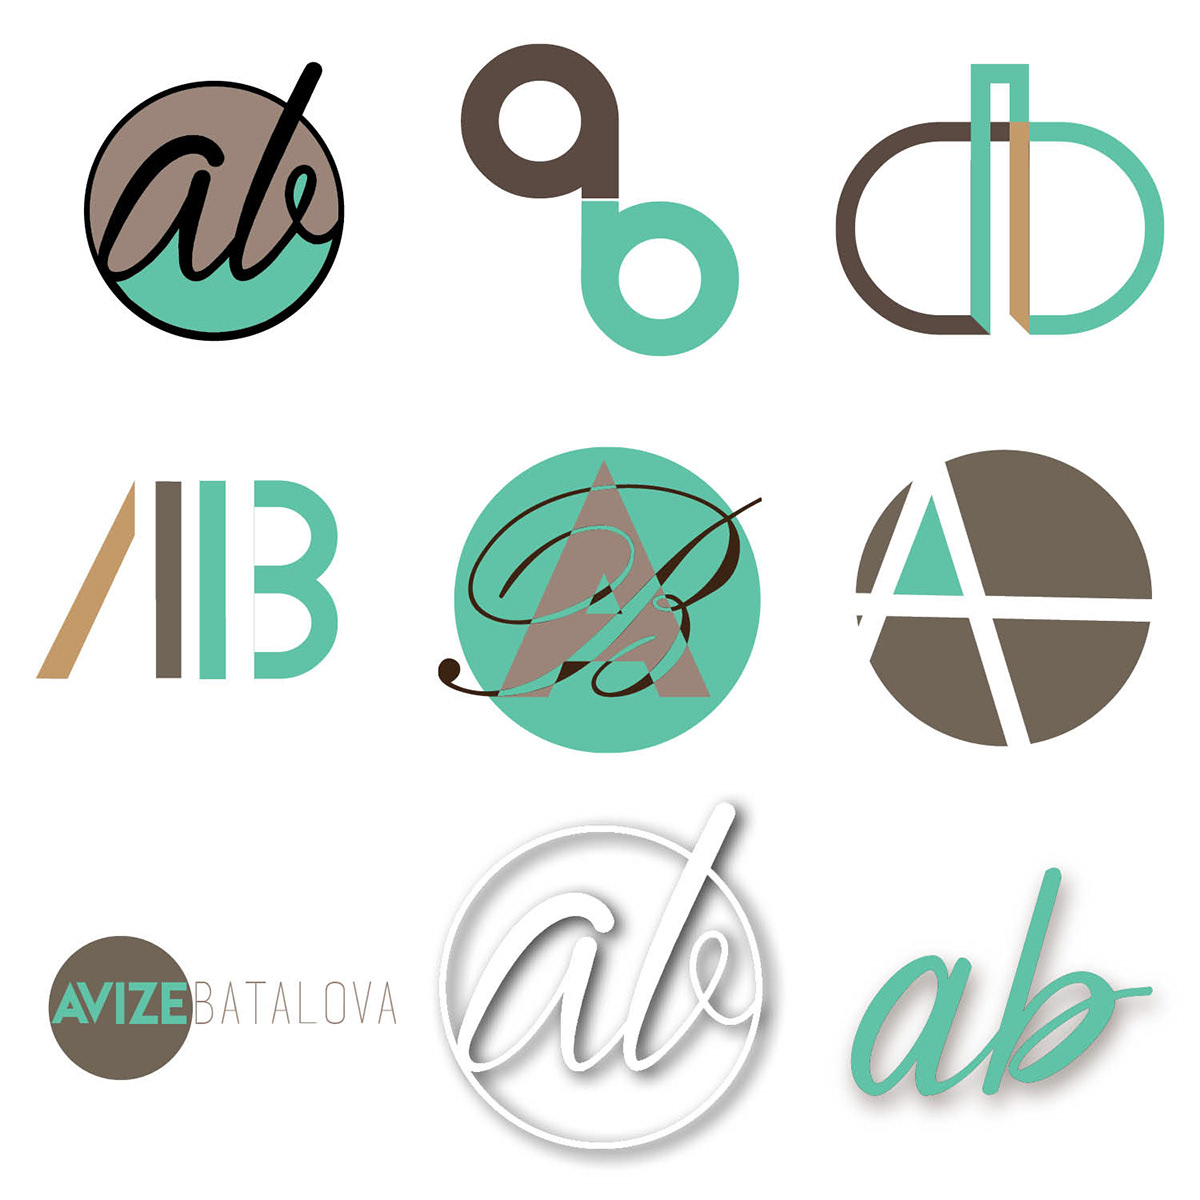 tesselation logos personal branding